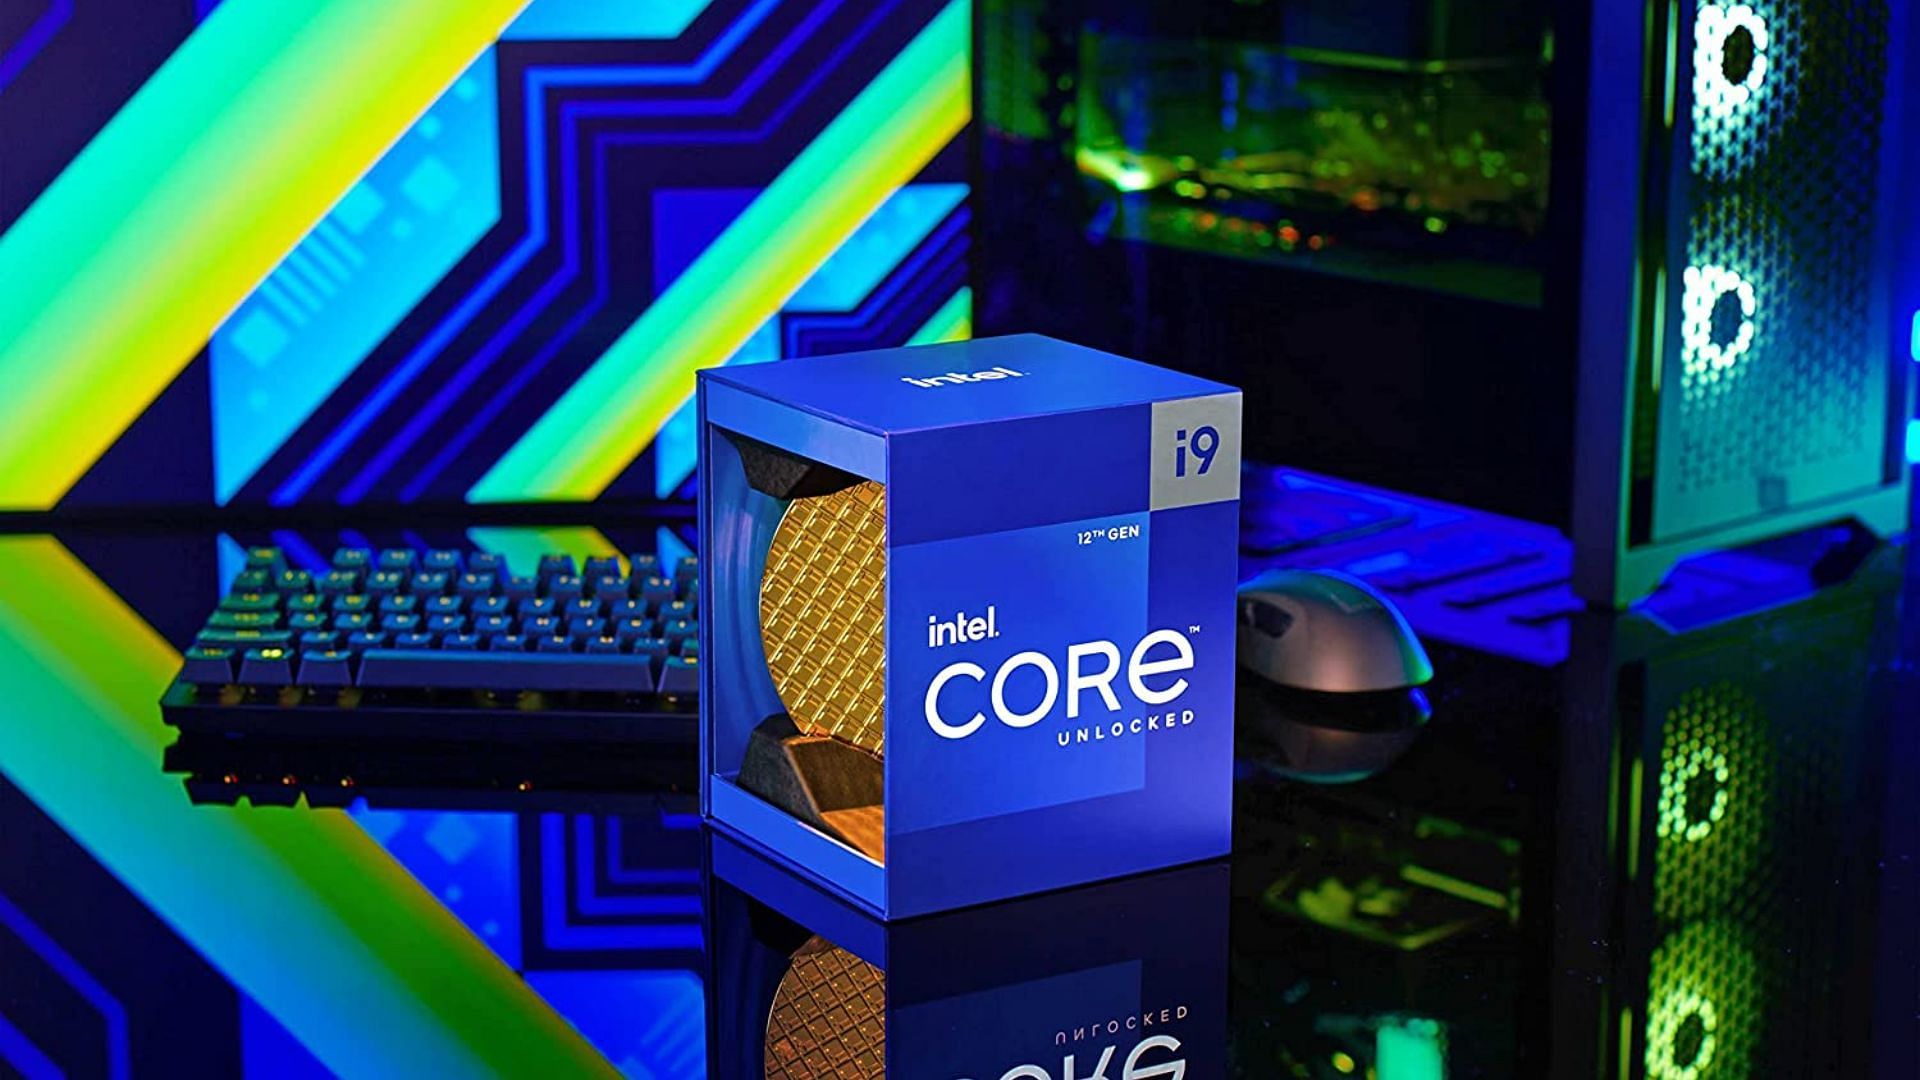 The Core i9 12900K processor (Image via Amazon)